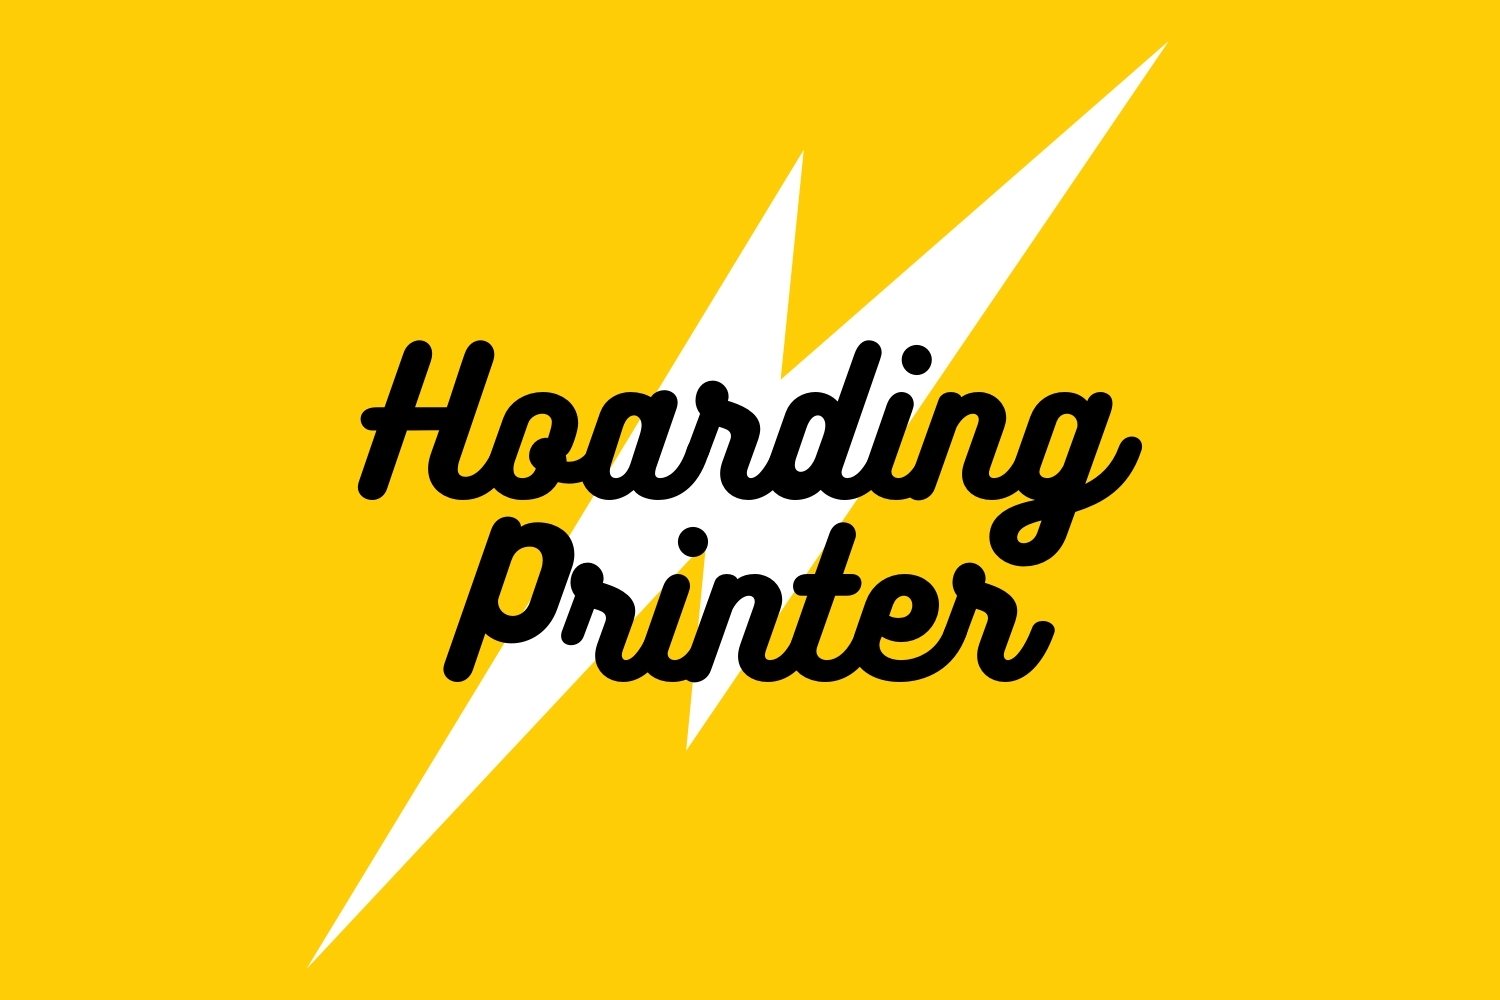 Hoarding Printer